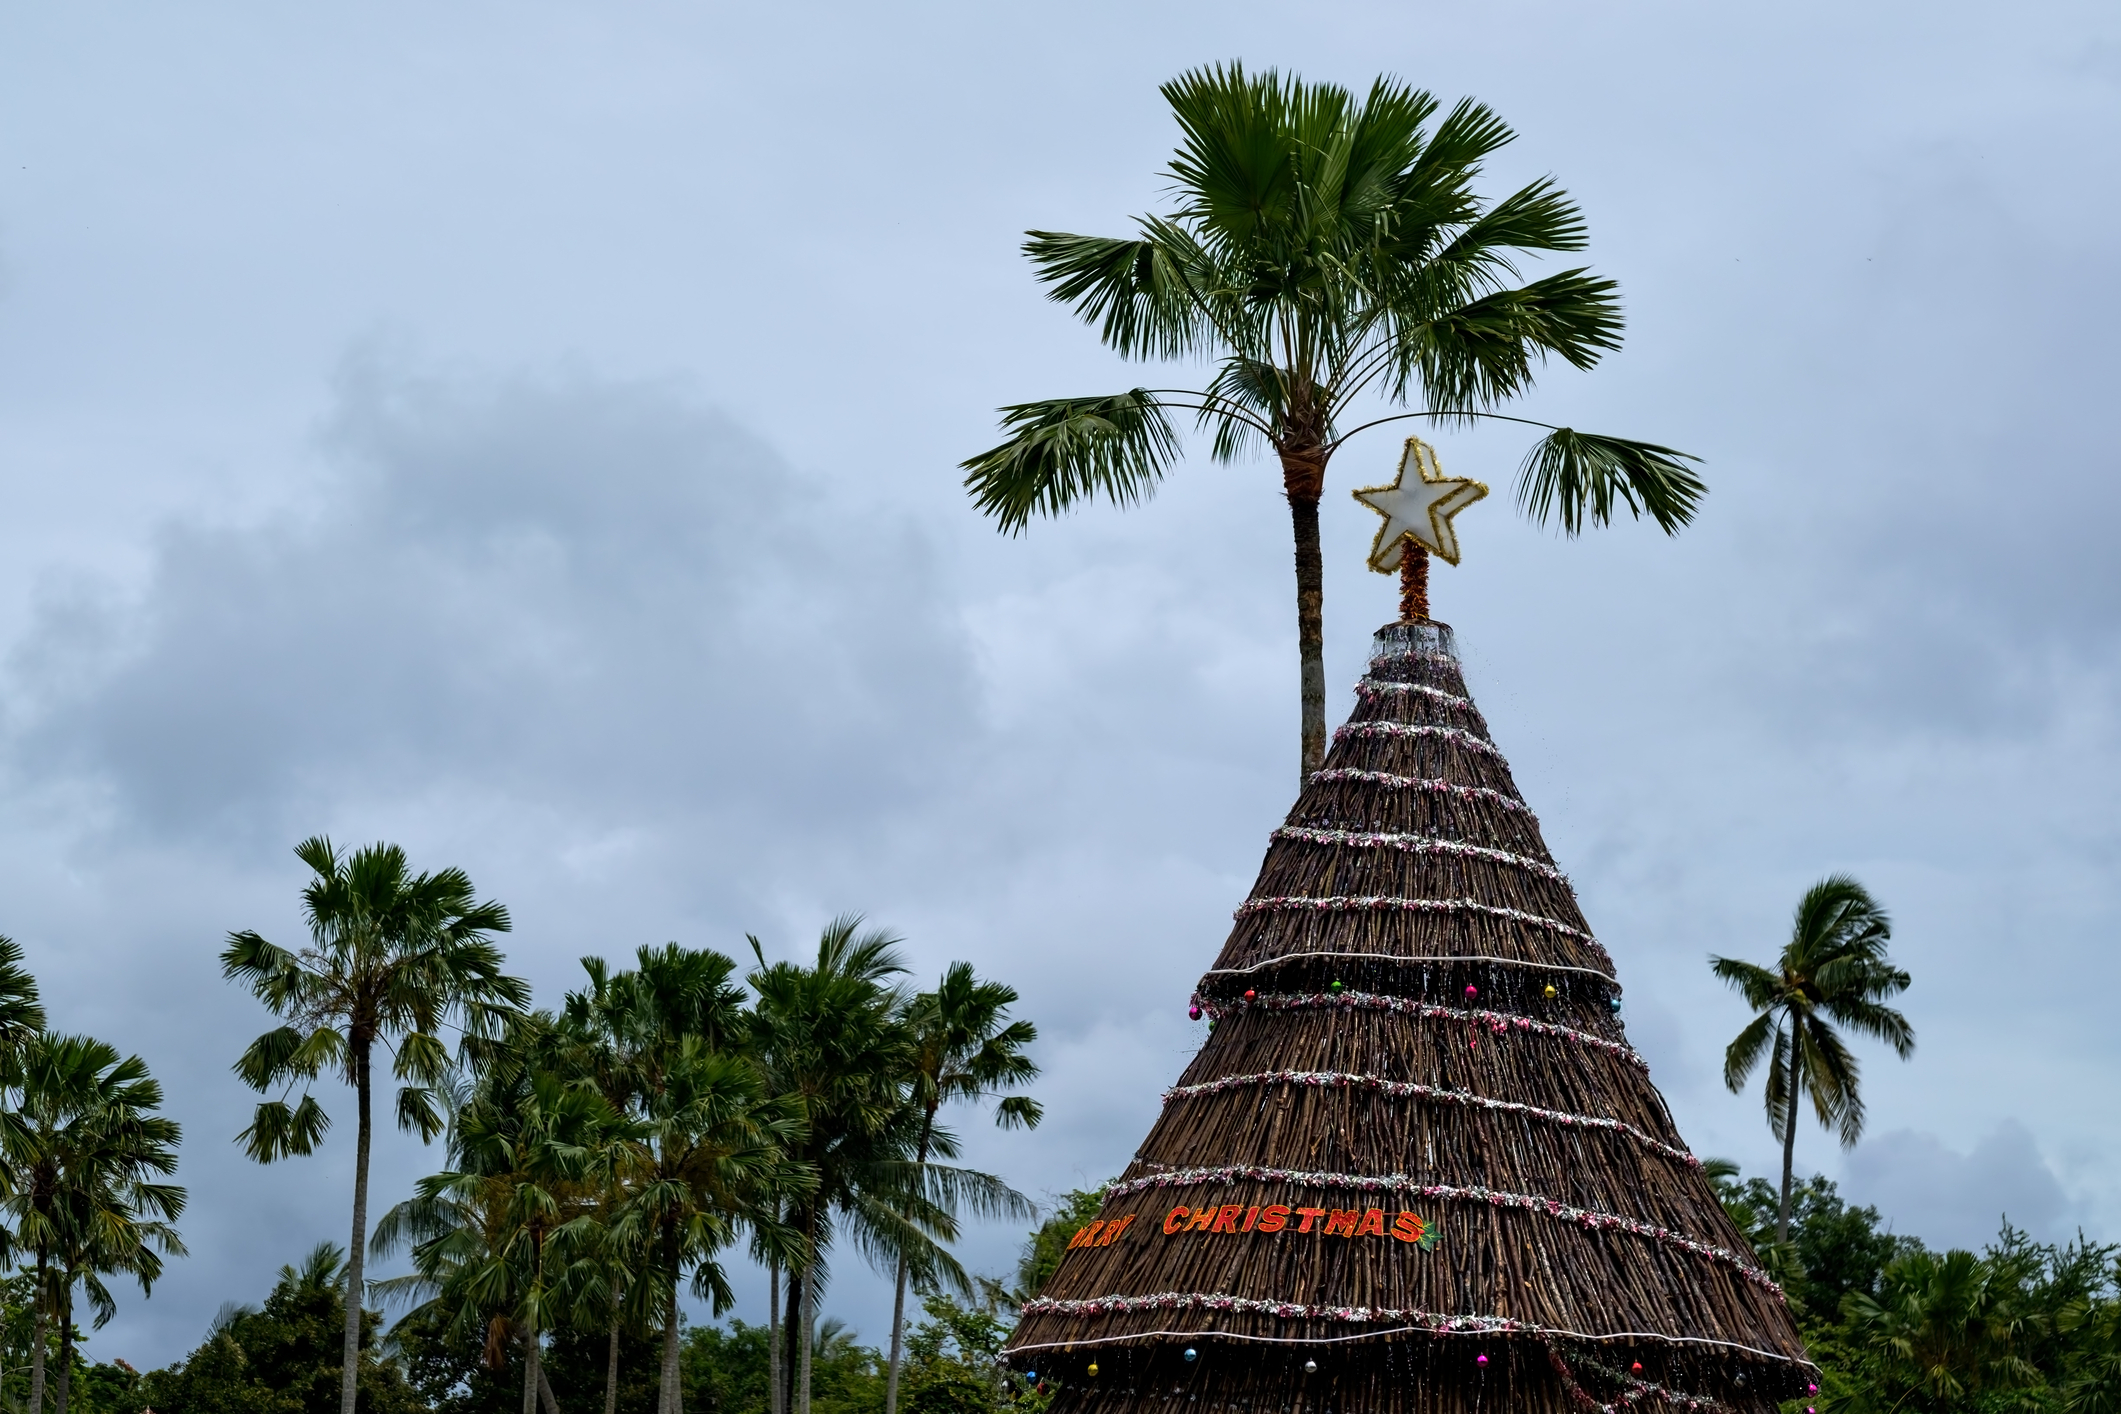 Brad de Crăciun în Bali, Indonezia, sursă foto dreamstime